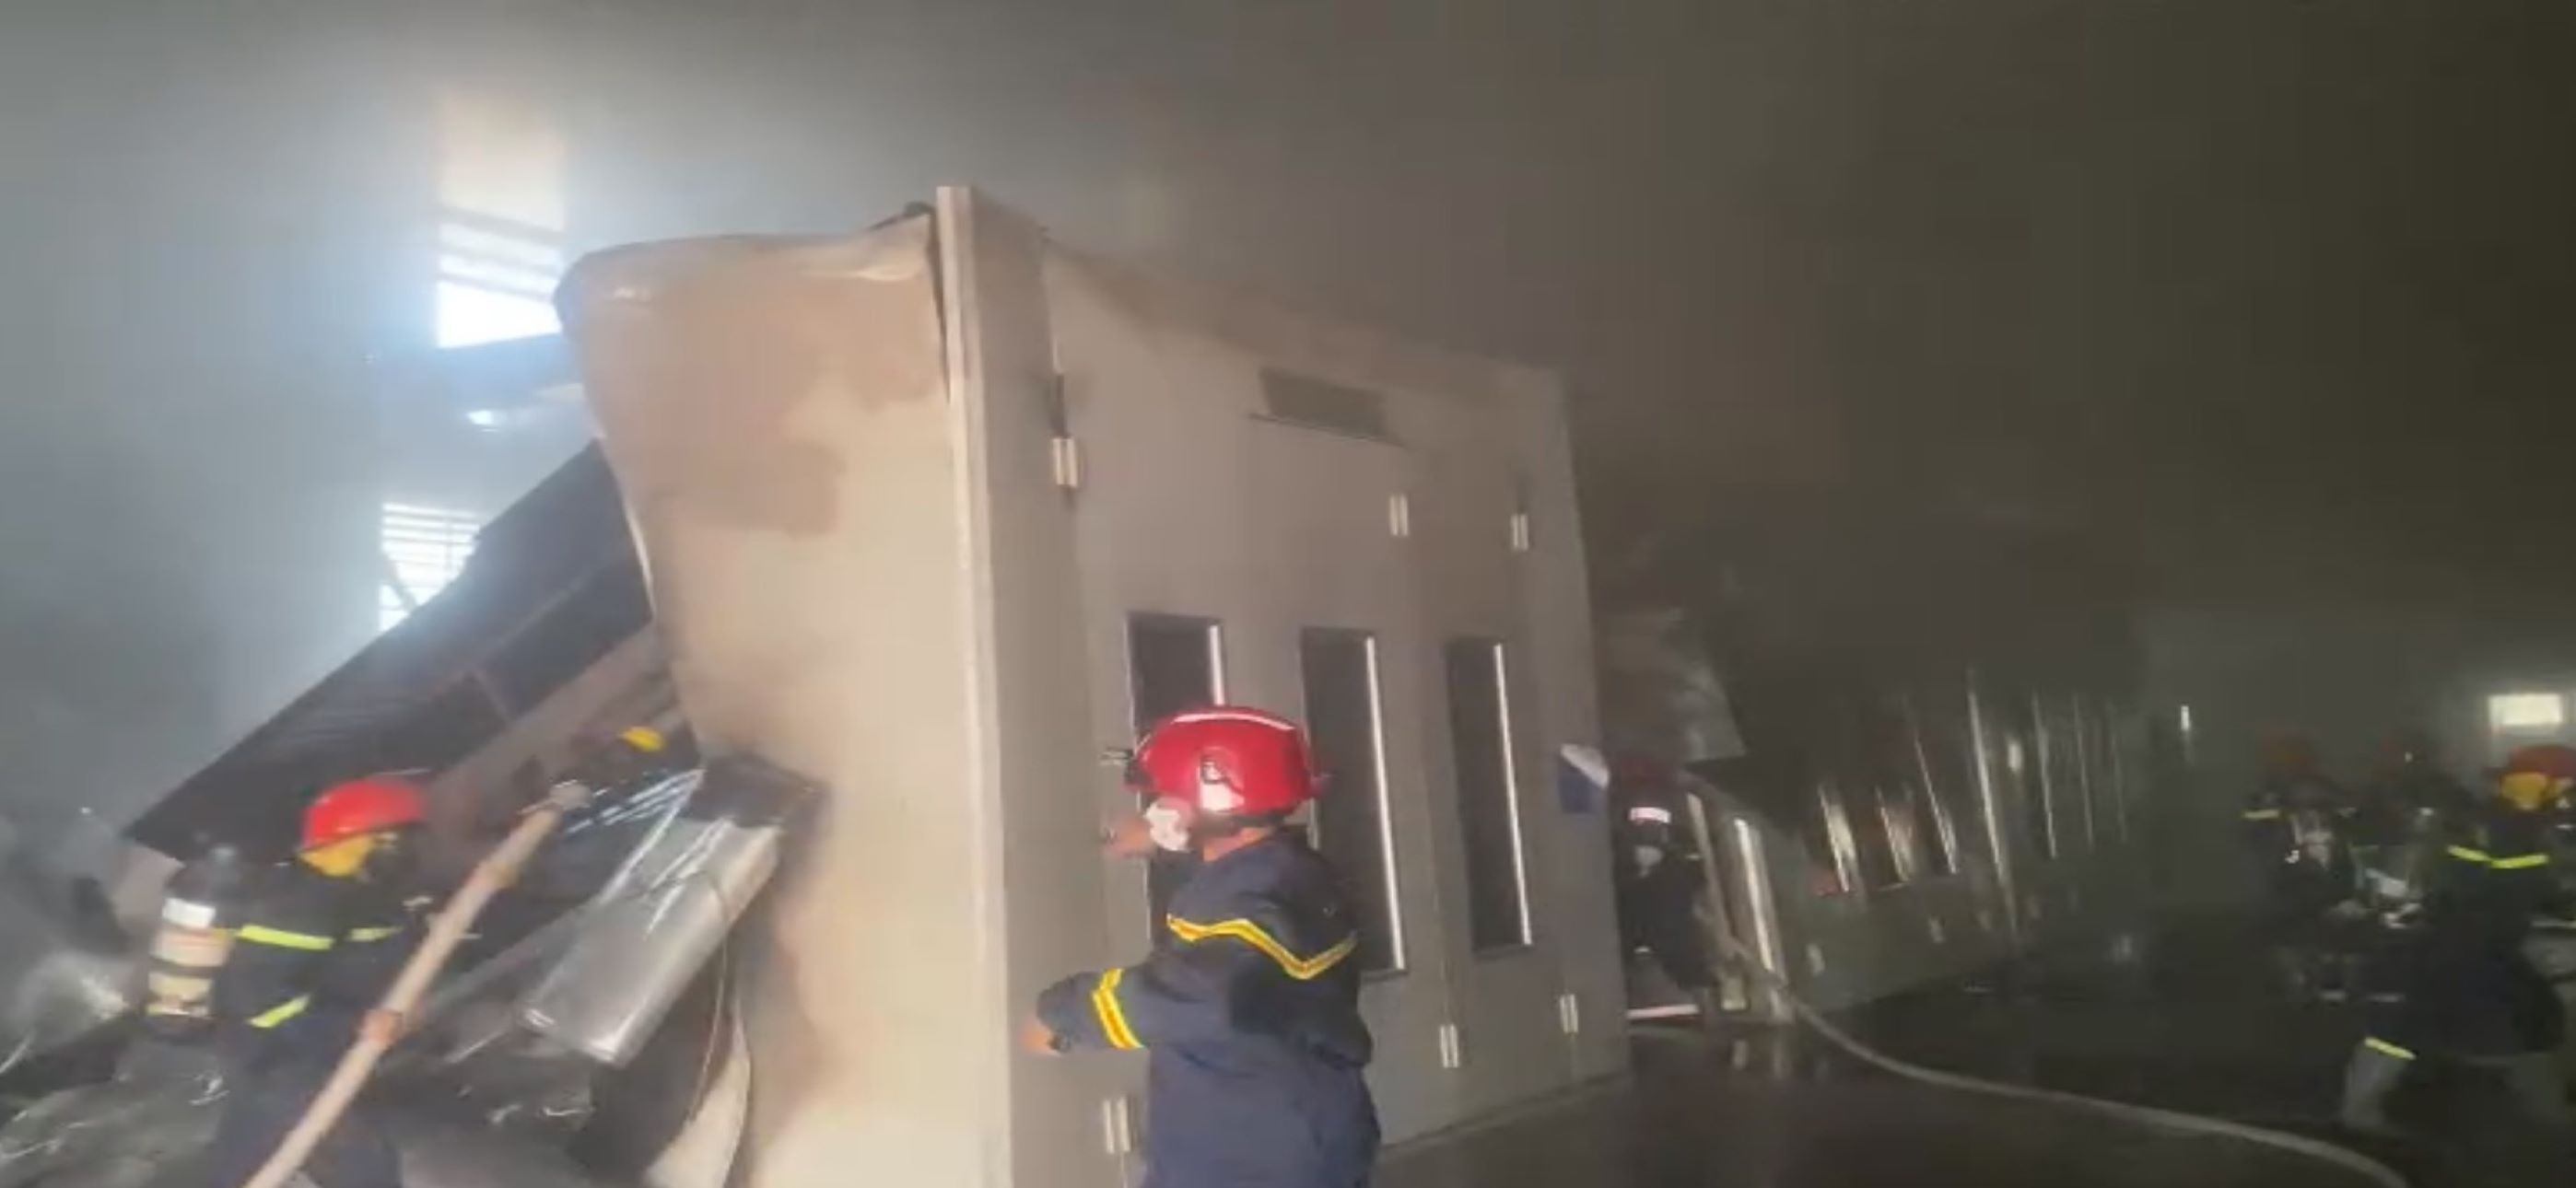 Lực lượng PCCC mang mặt nạ chống độc vào bên trong để chữa cháy. Ảnh: Duy Tuấn